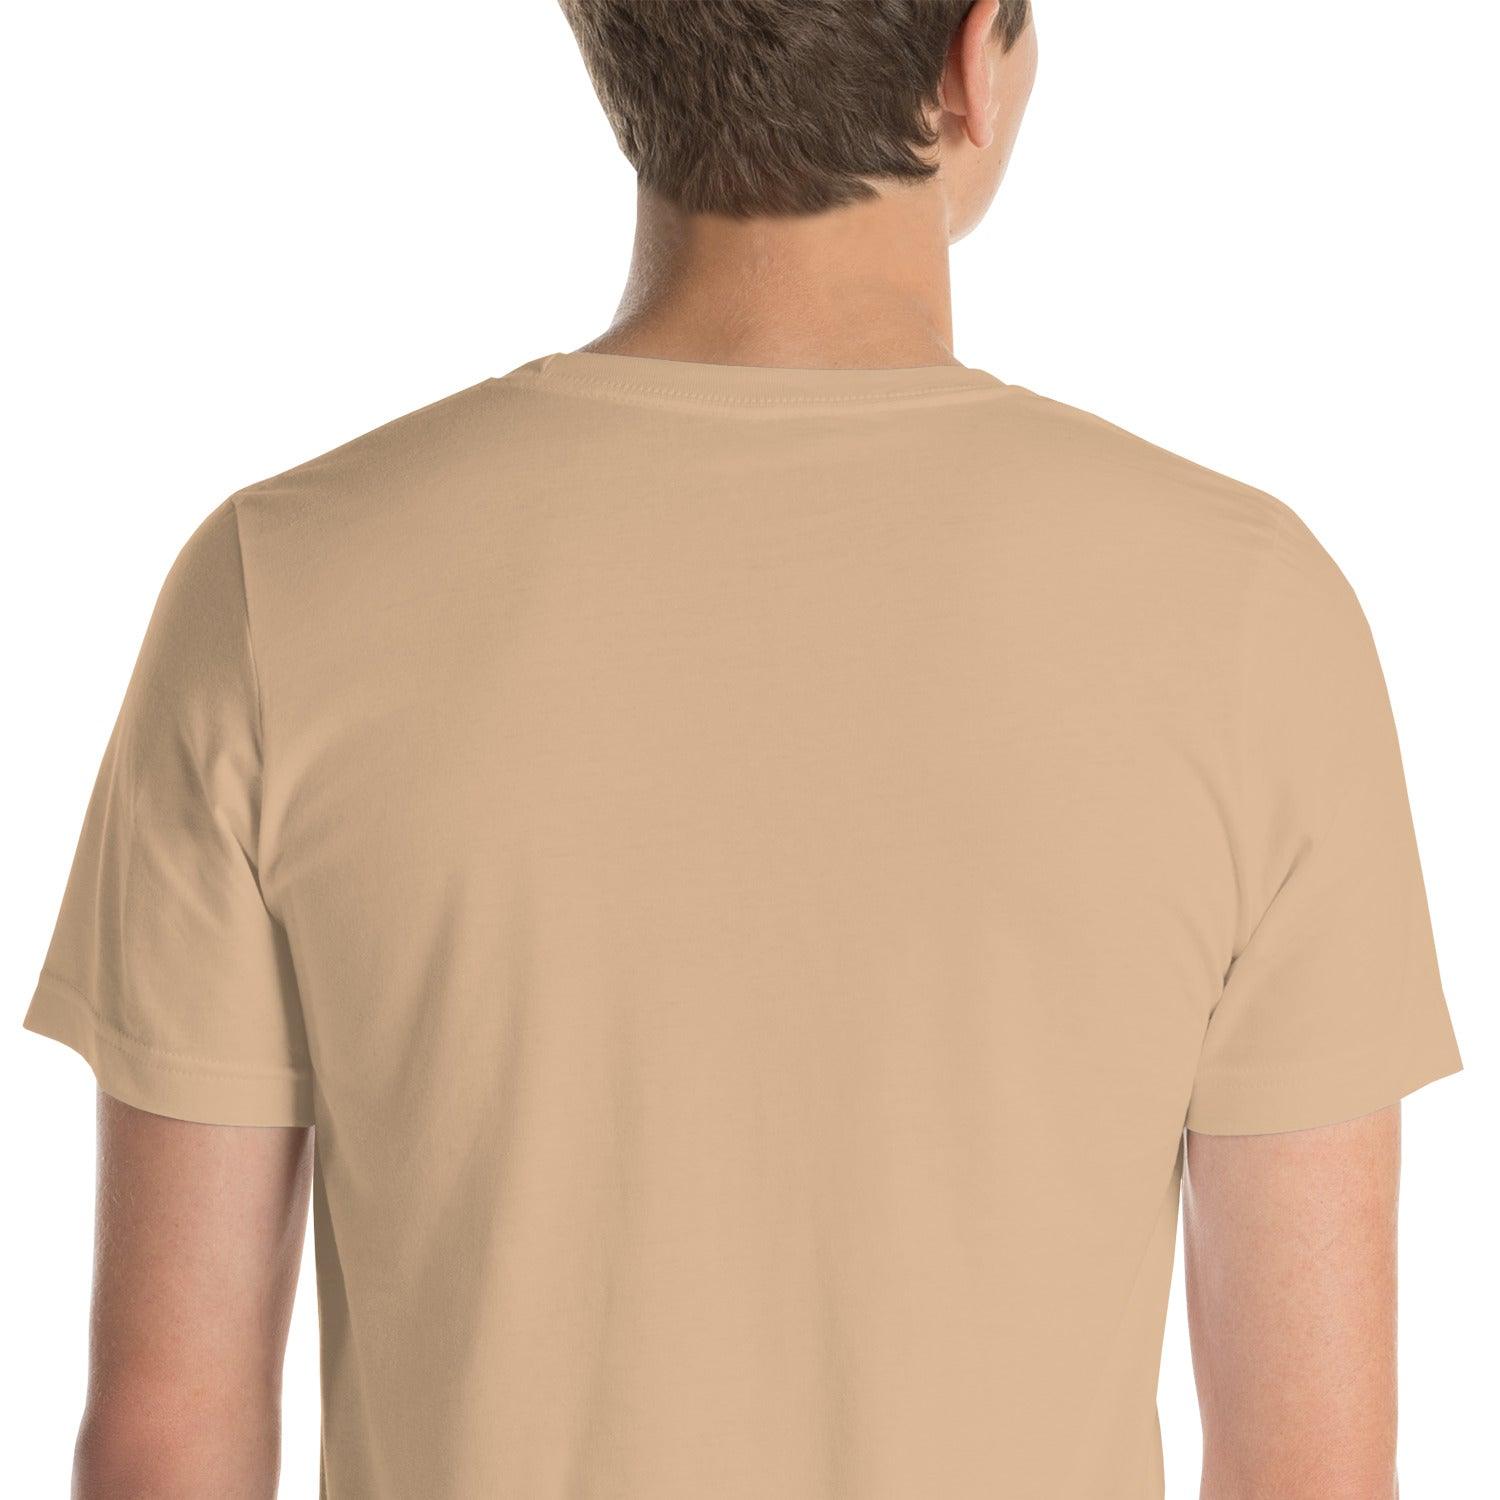 Classic Richie Benaud Game Yarns T-shirt - Game Yarns